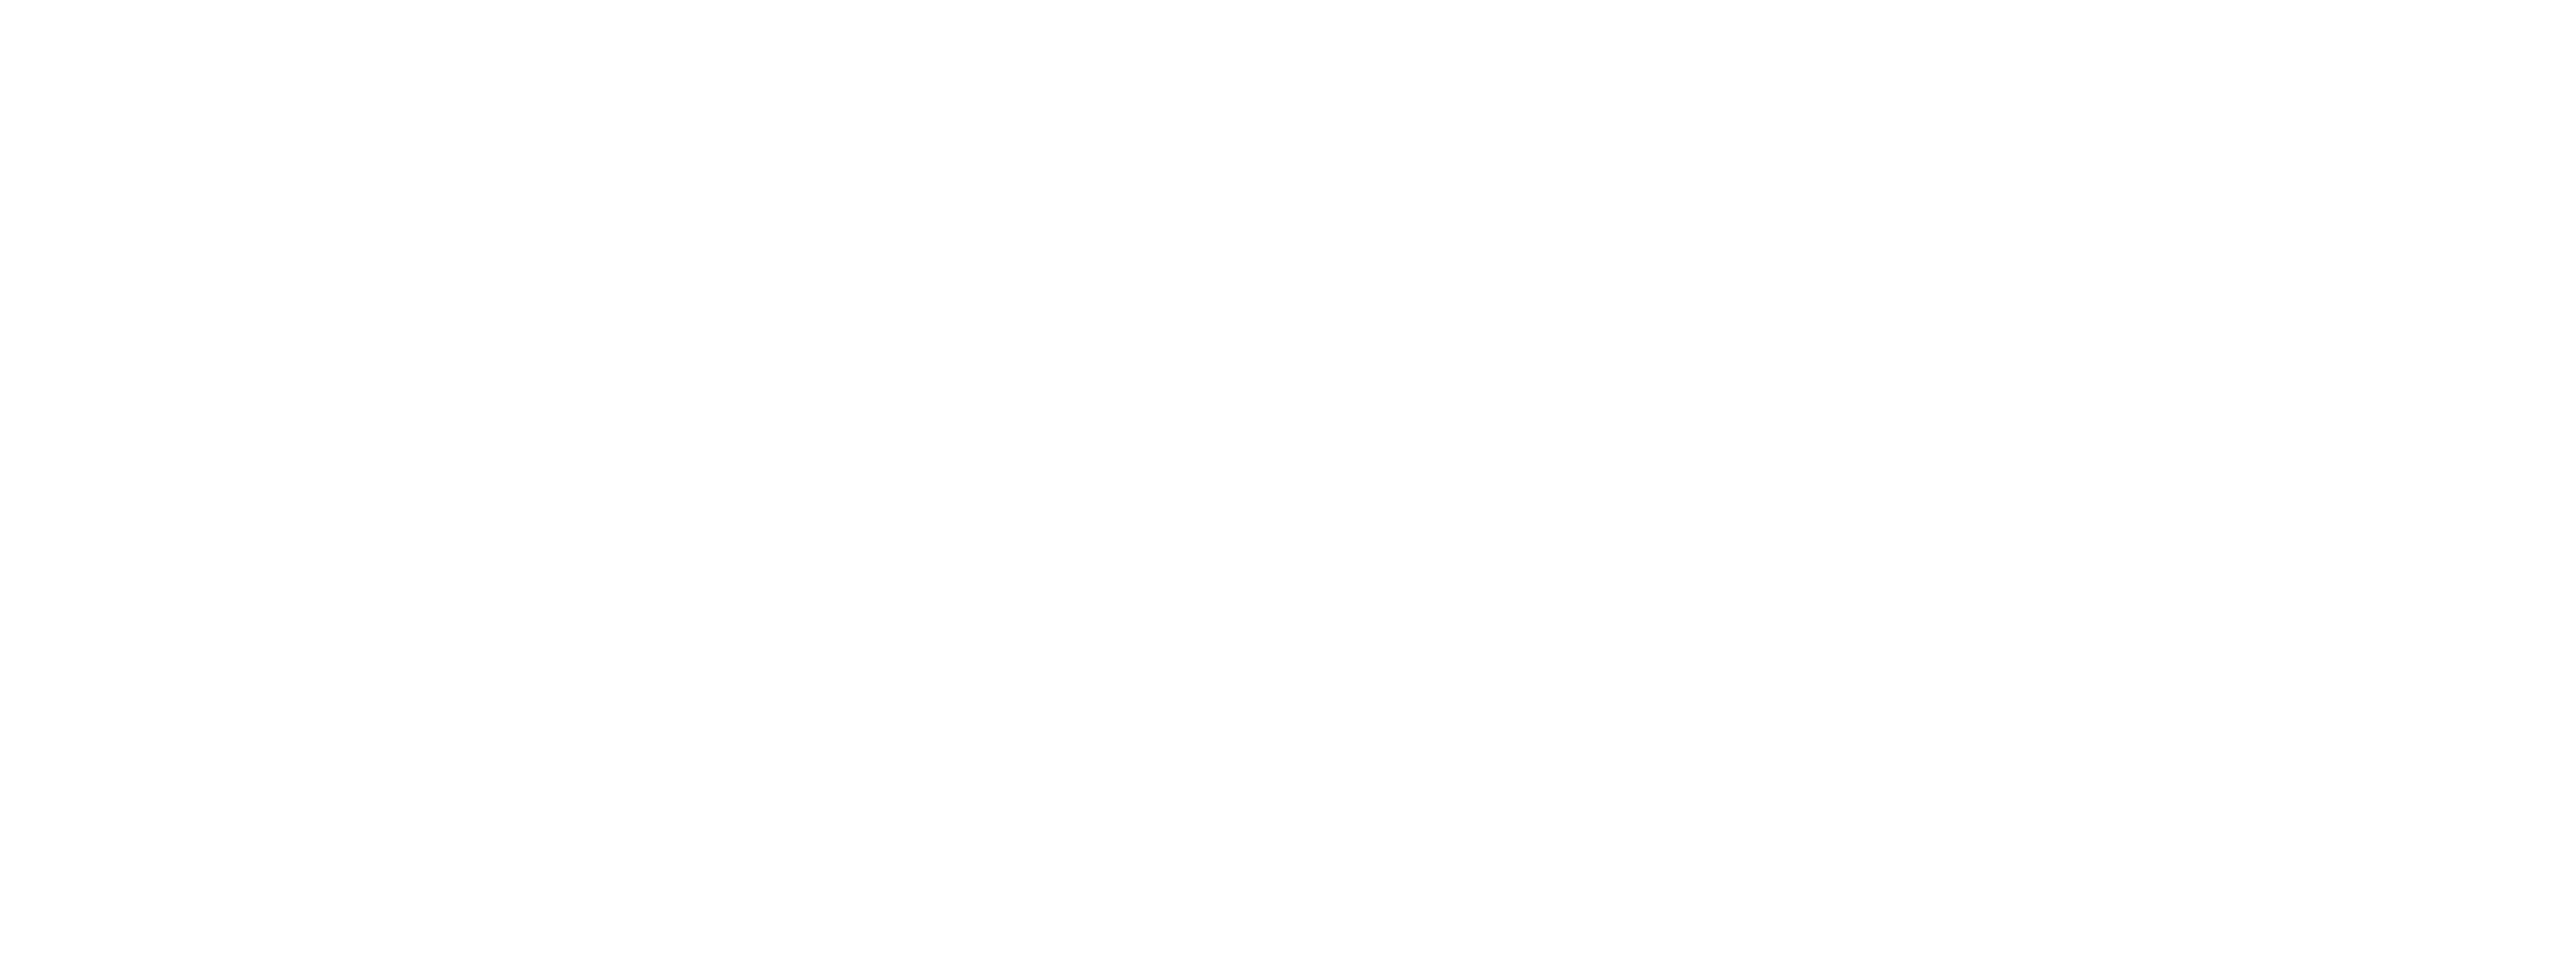 Dangerous Press